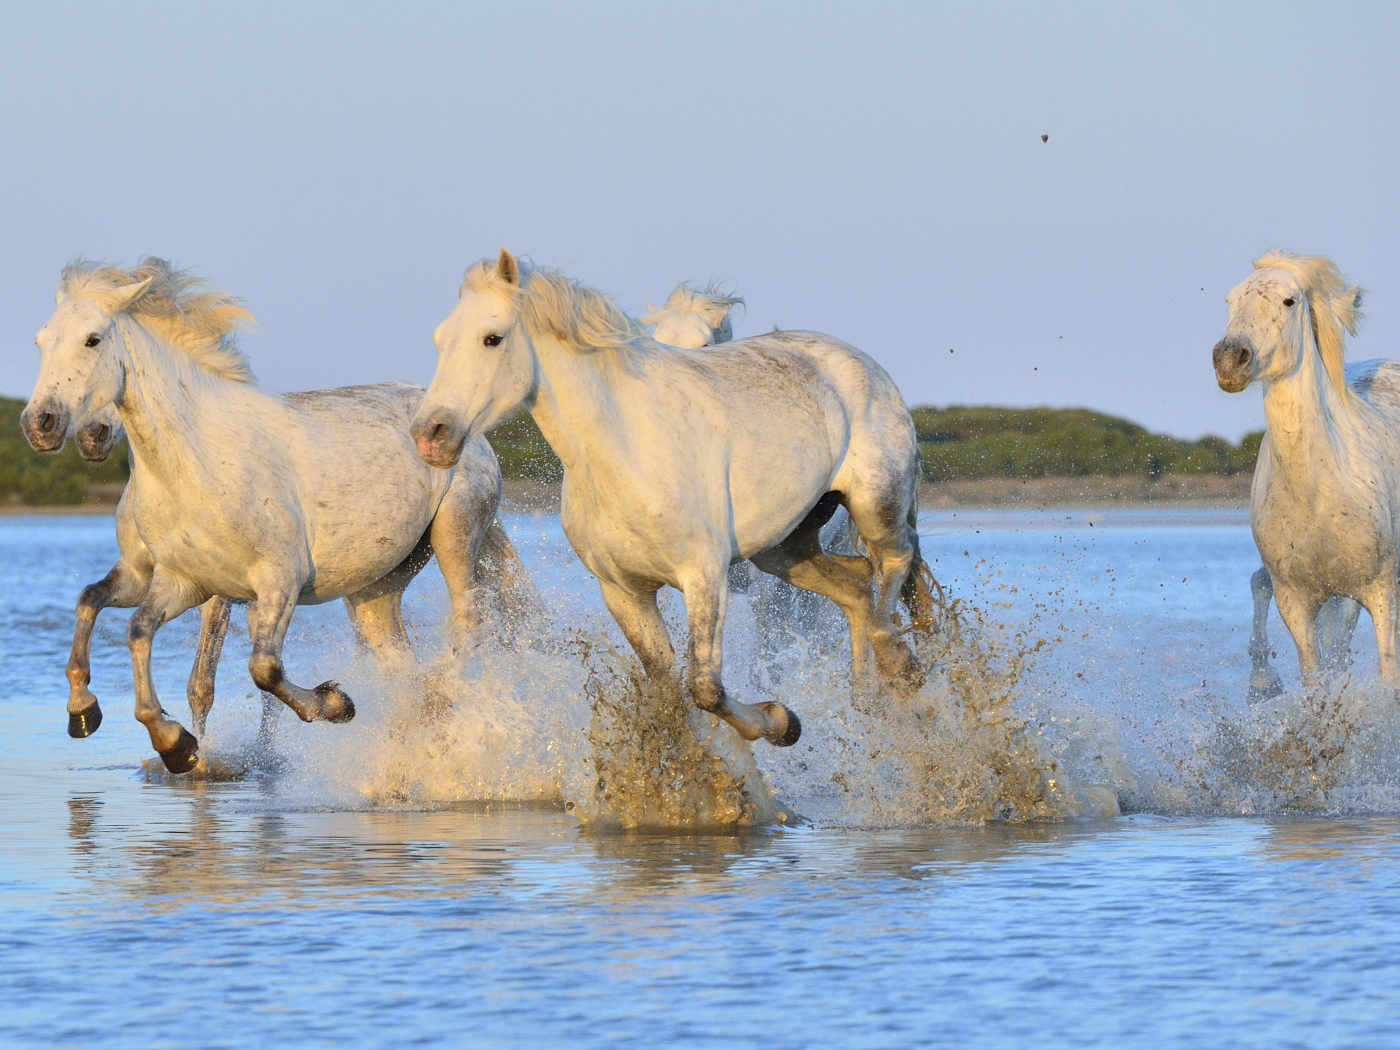 White horses run on water